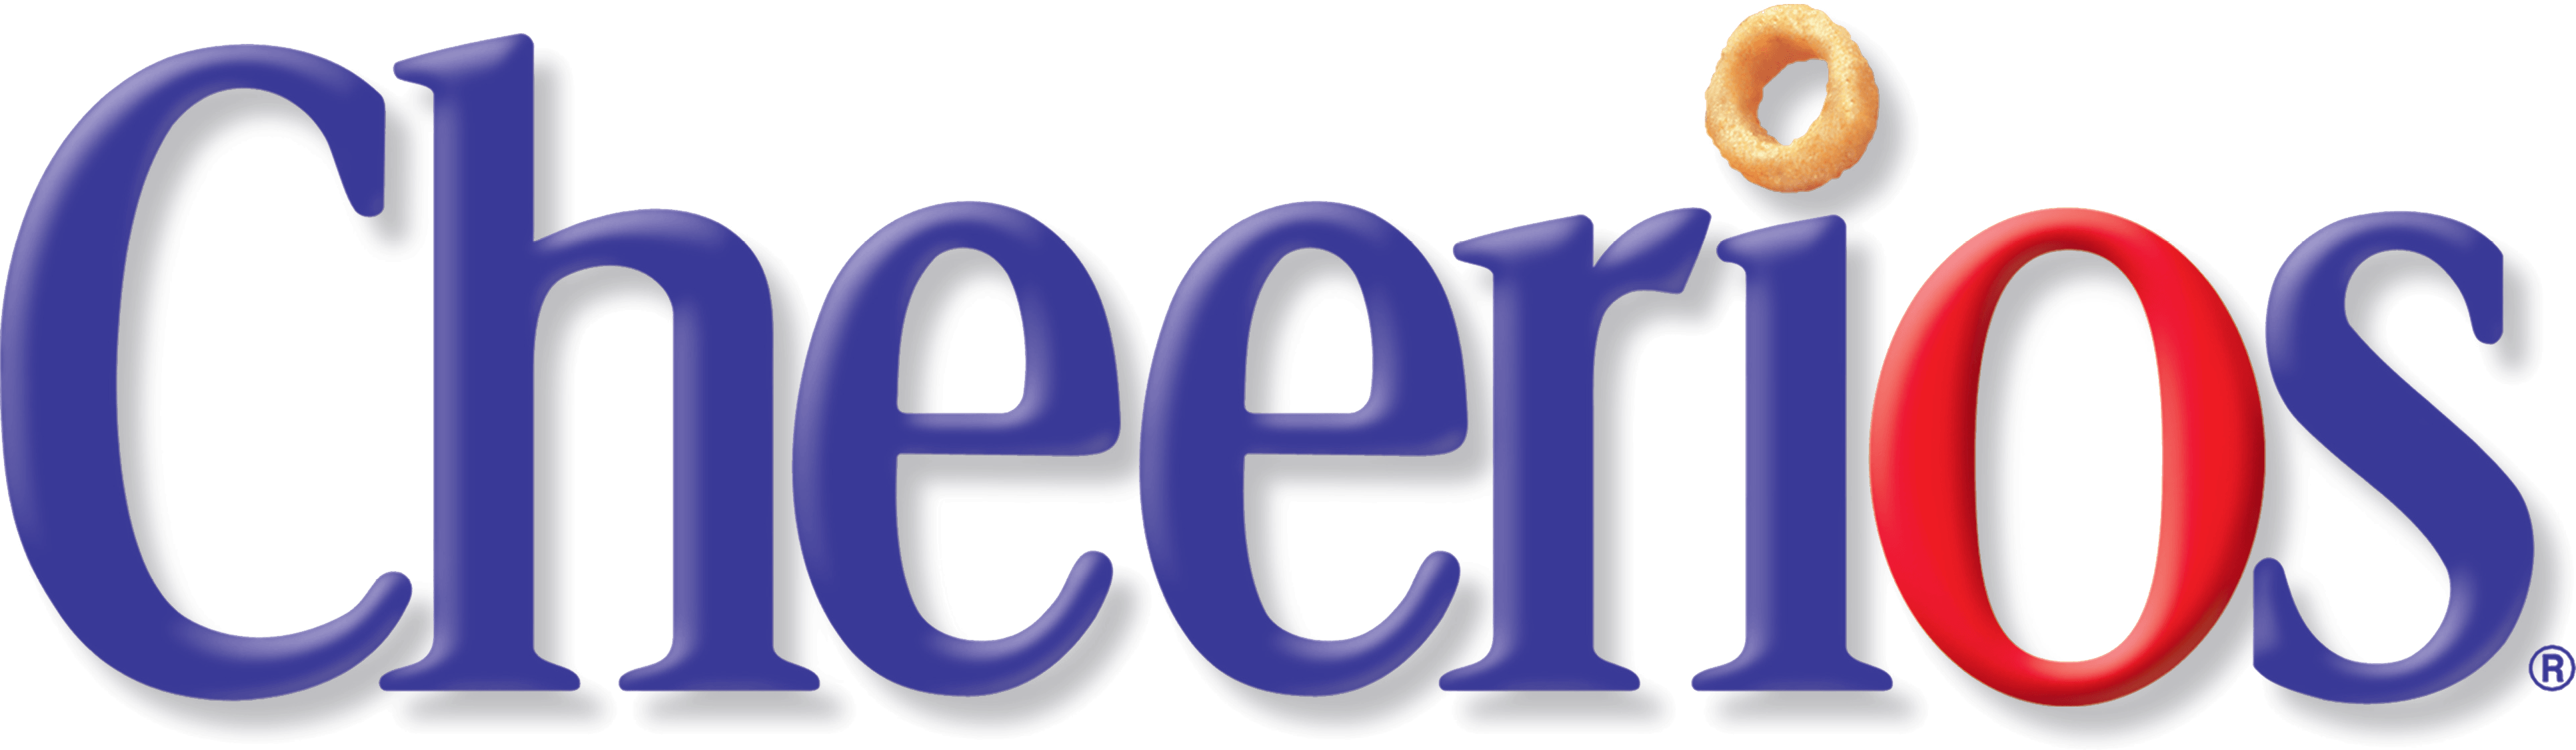 Cheerios Logo - Cheerios Logo | Logos-of-Interest | Logos, Cereal, Logo design